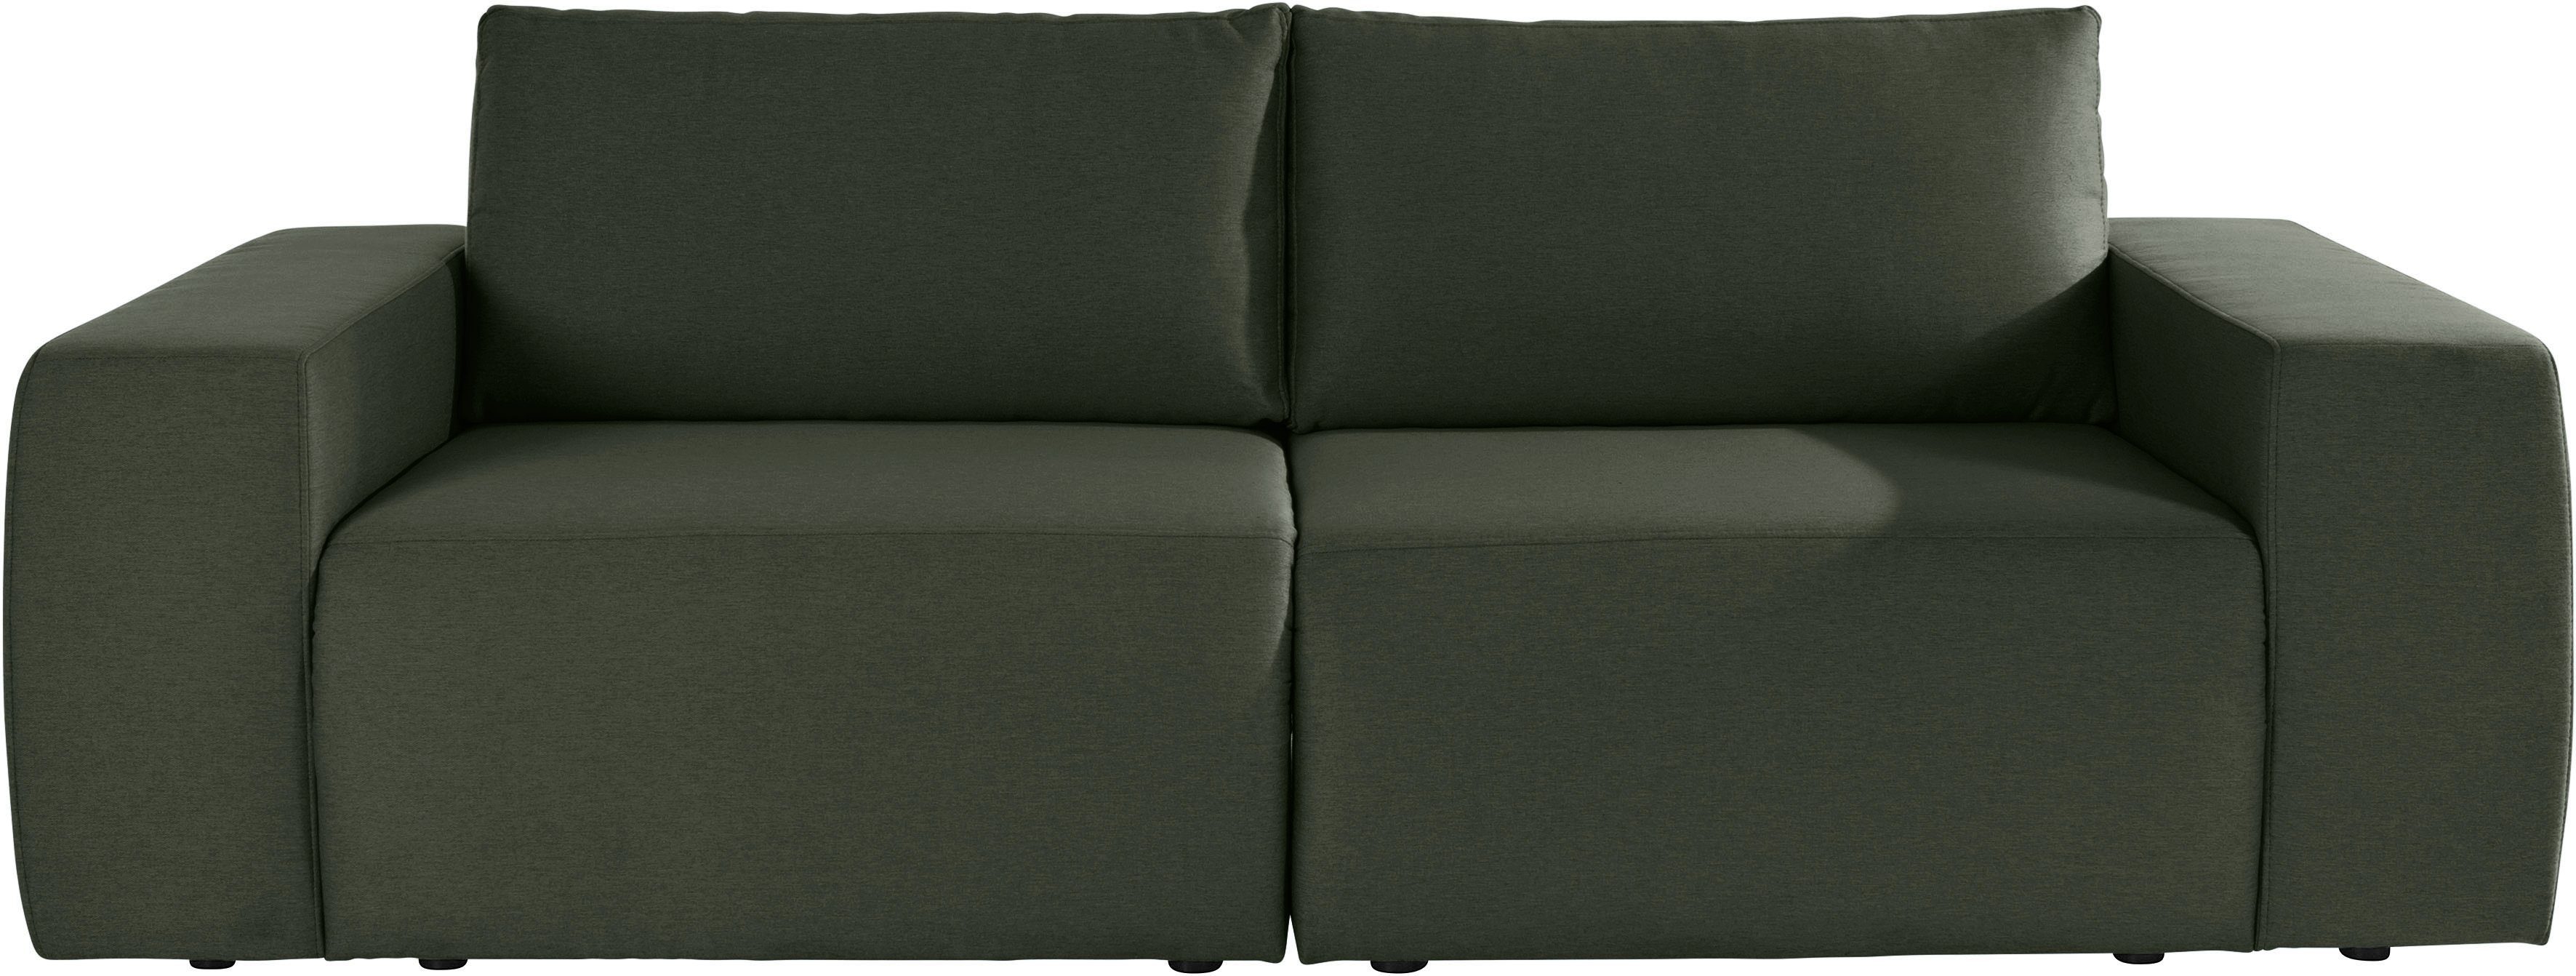 Joop Wolfgang und Big-Sofa LOOKS LooksII, geradlinig komfortabel by